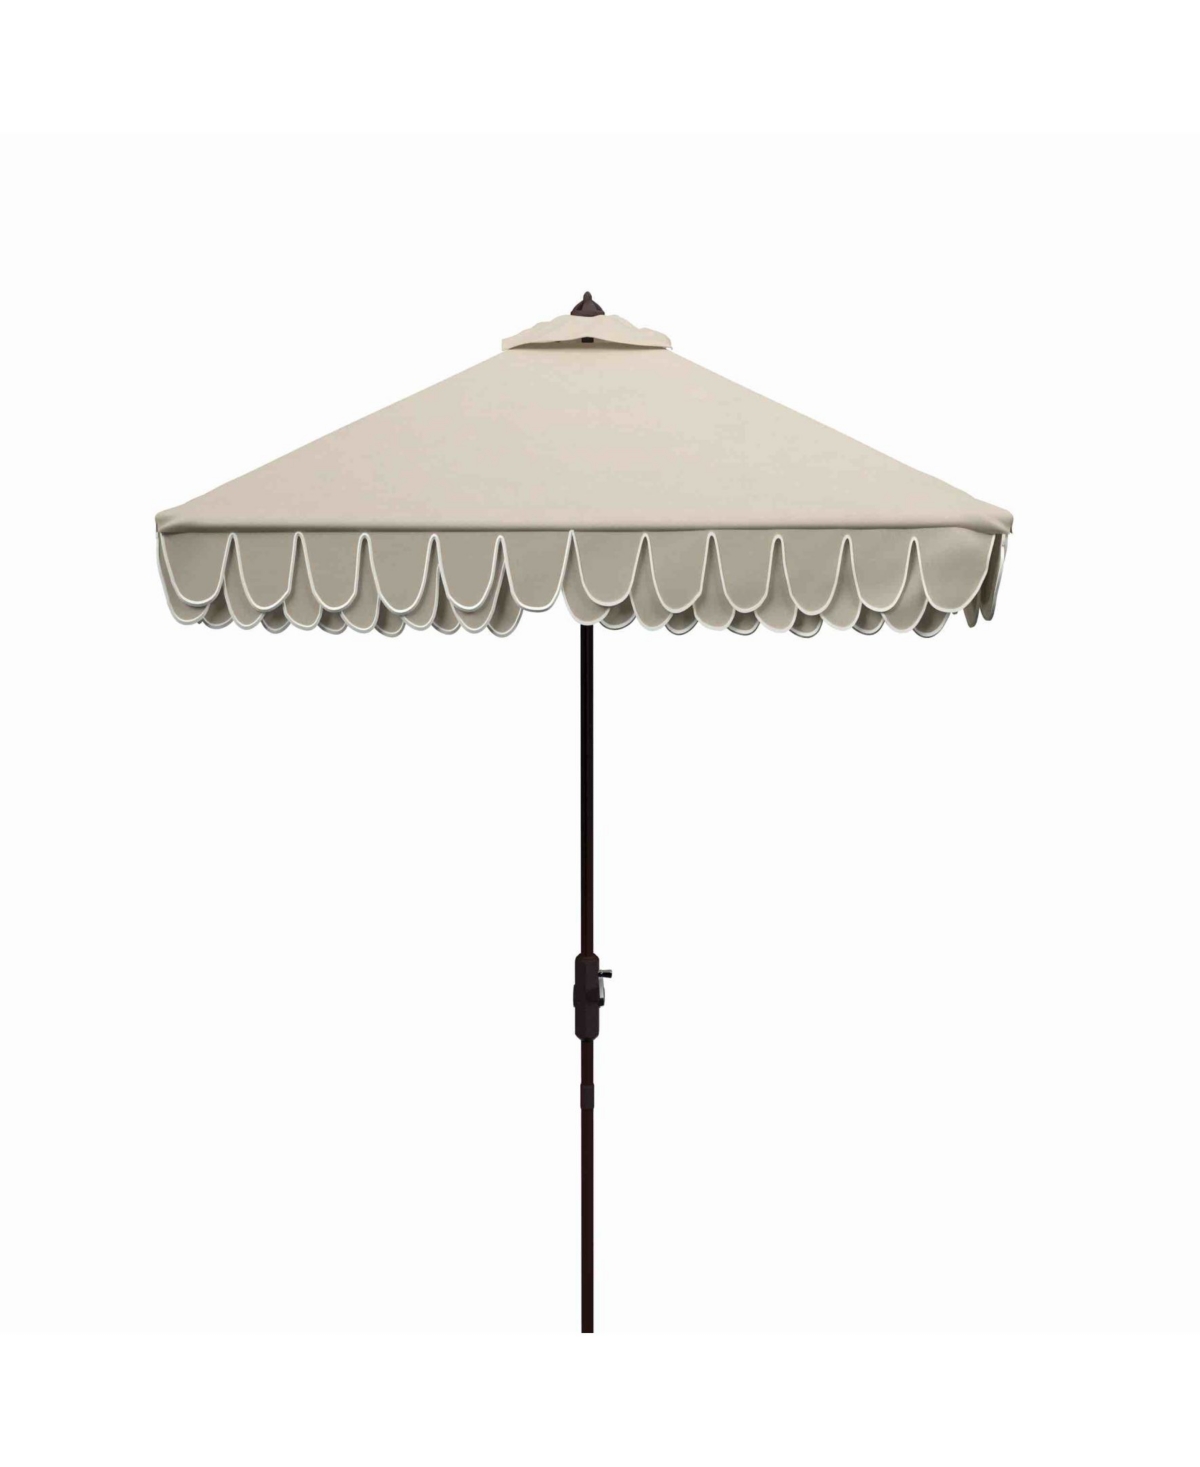 Safavieh Elegant 7.5' Square Umbrella In Beige,white